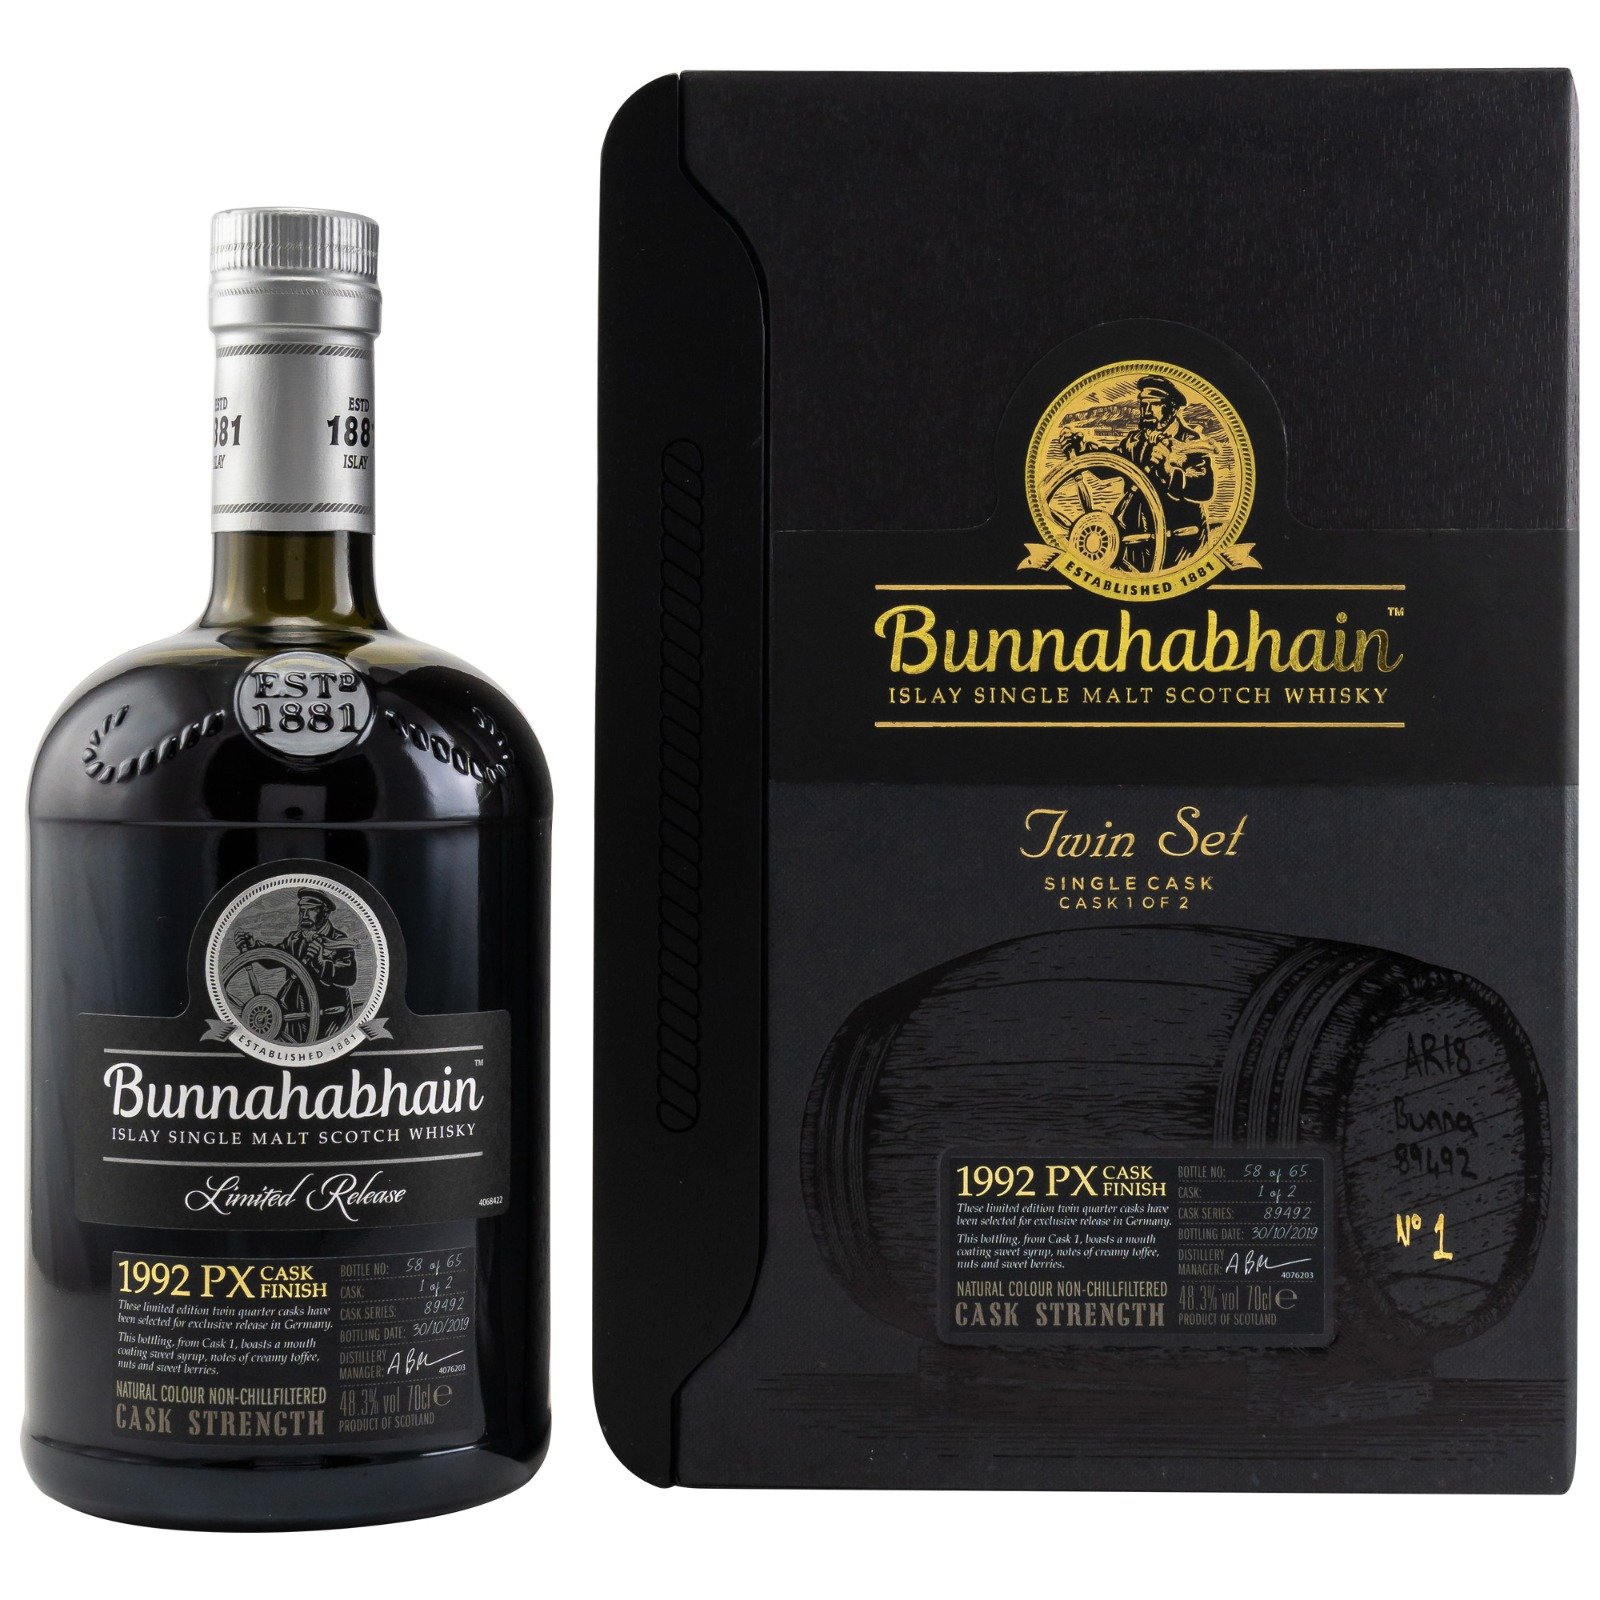 Bunnahabhain 1992 PX Quarter Cask #1 Twin Set Cask Strength Islay Single Malt Scotch Whisky